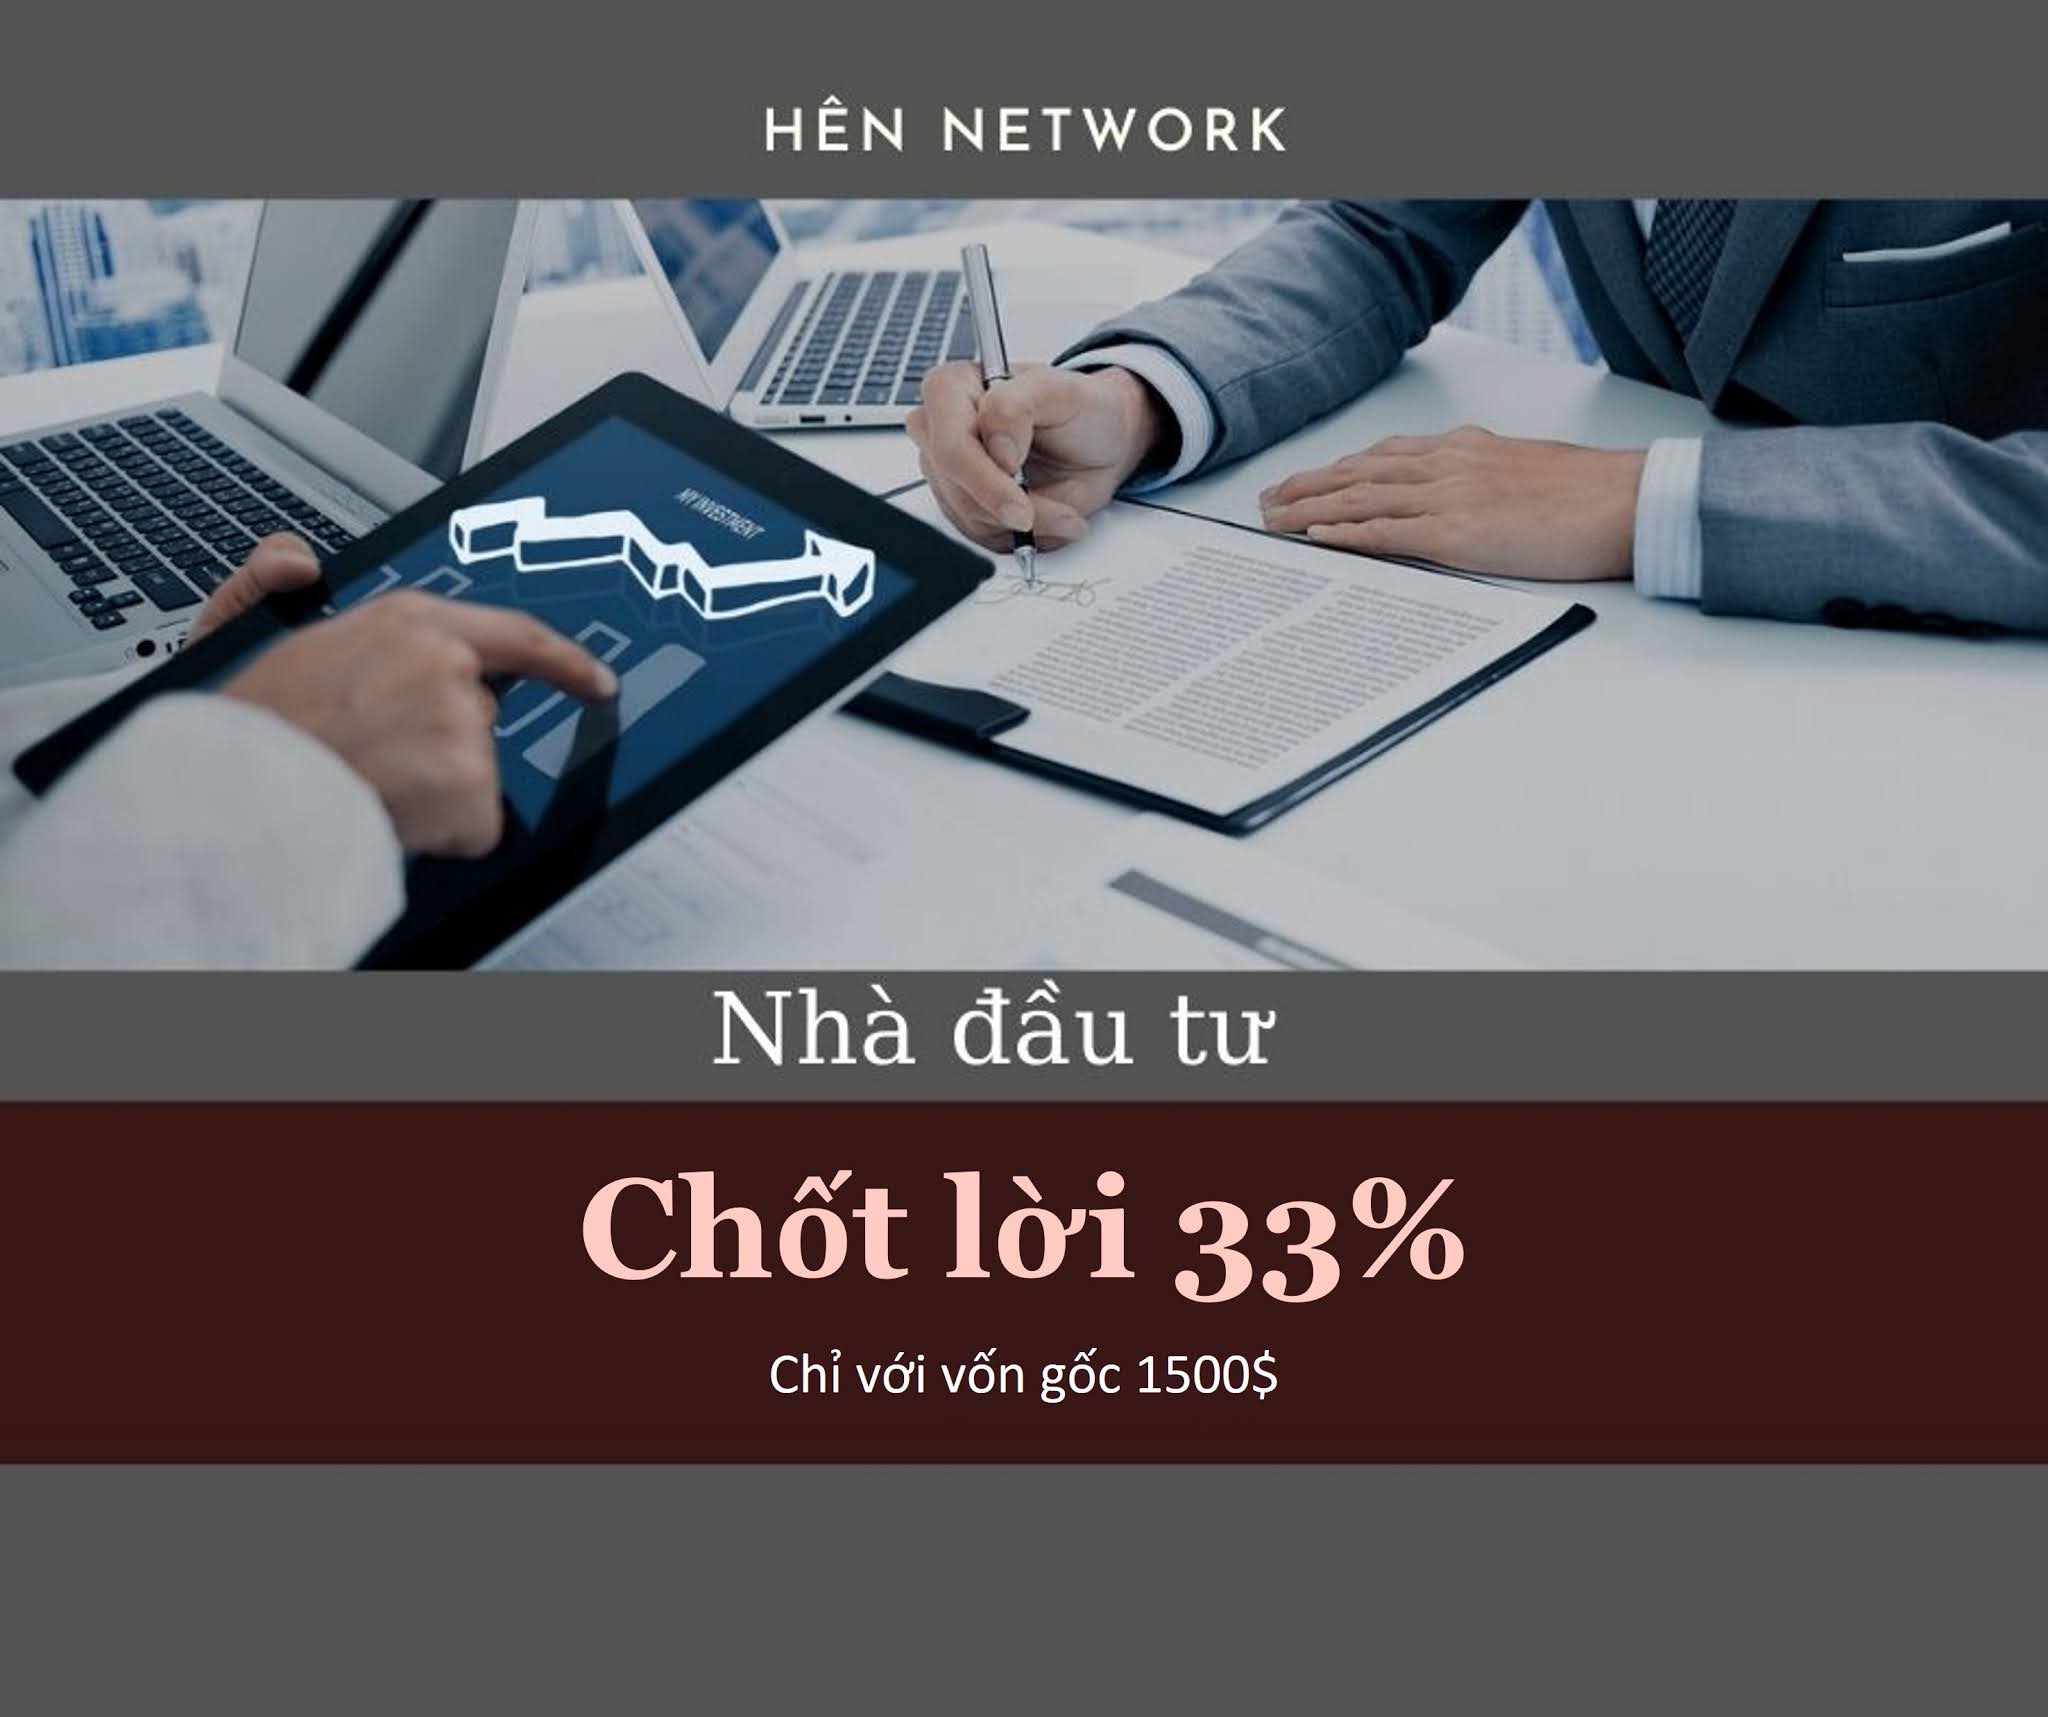 Nhà đầu tư Hên Network chốt lời 33% từ vốn gốc 1,500$